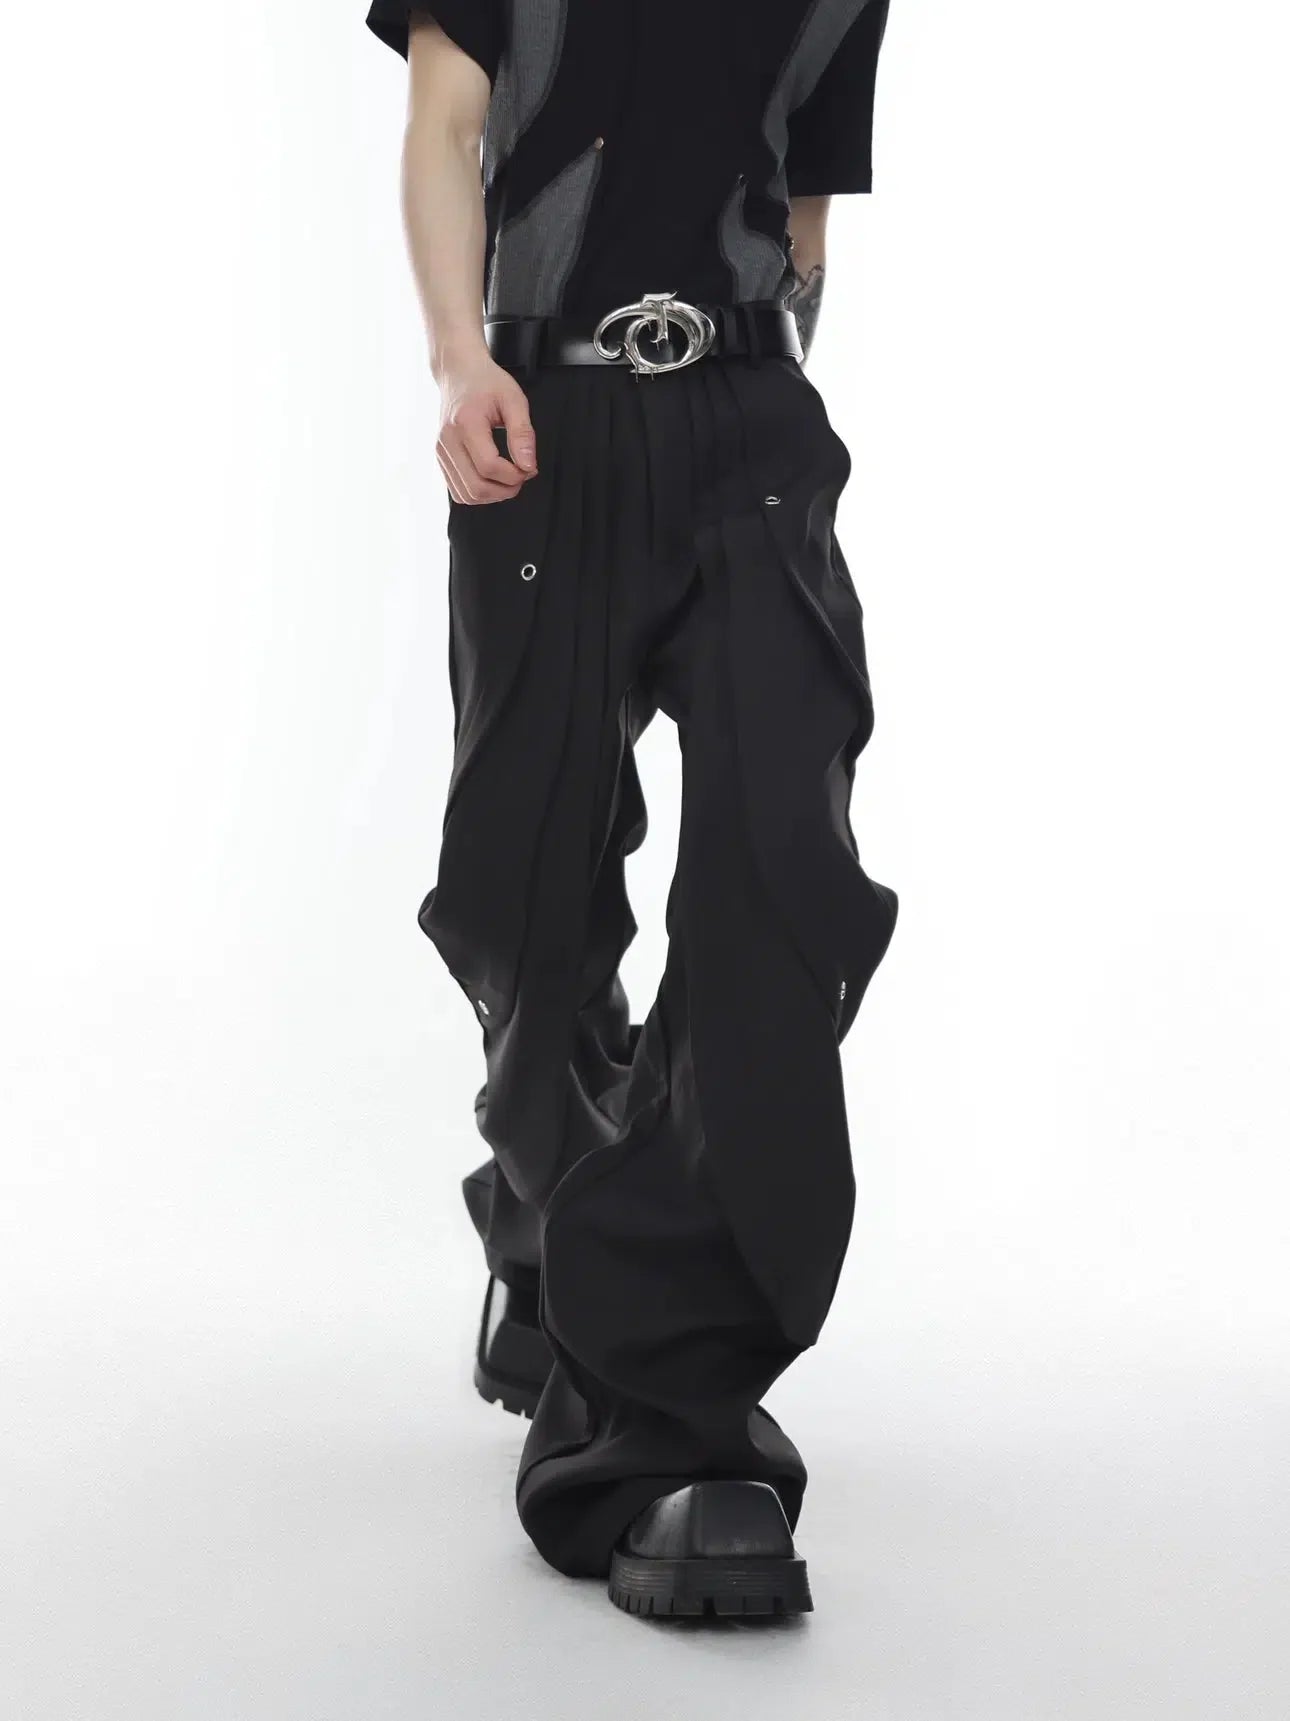 Consecutive Folds Wide Leg Pants Korean Street Fashion Pants By Argue Culture Shop Online at OH Vault